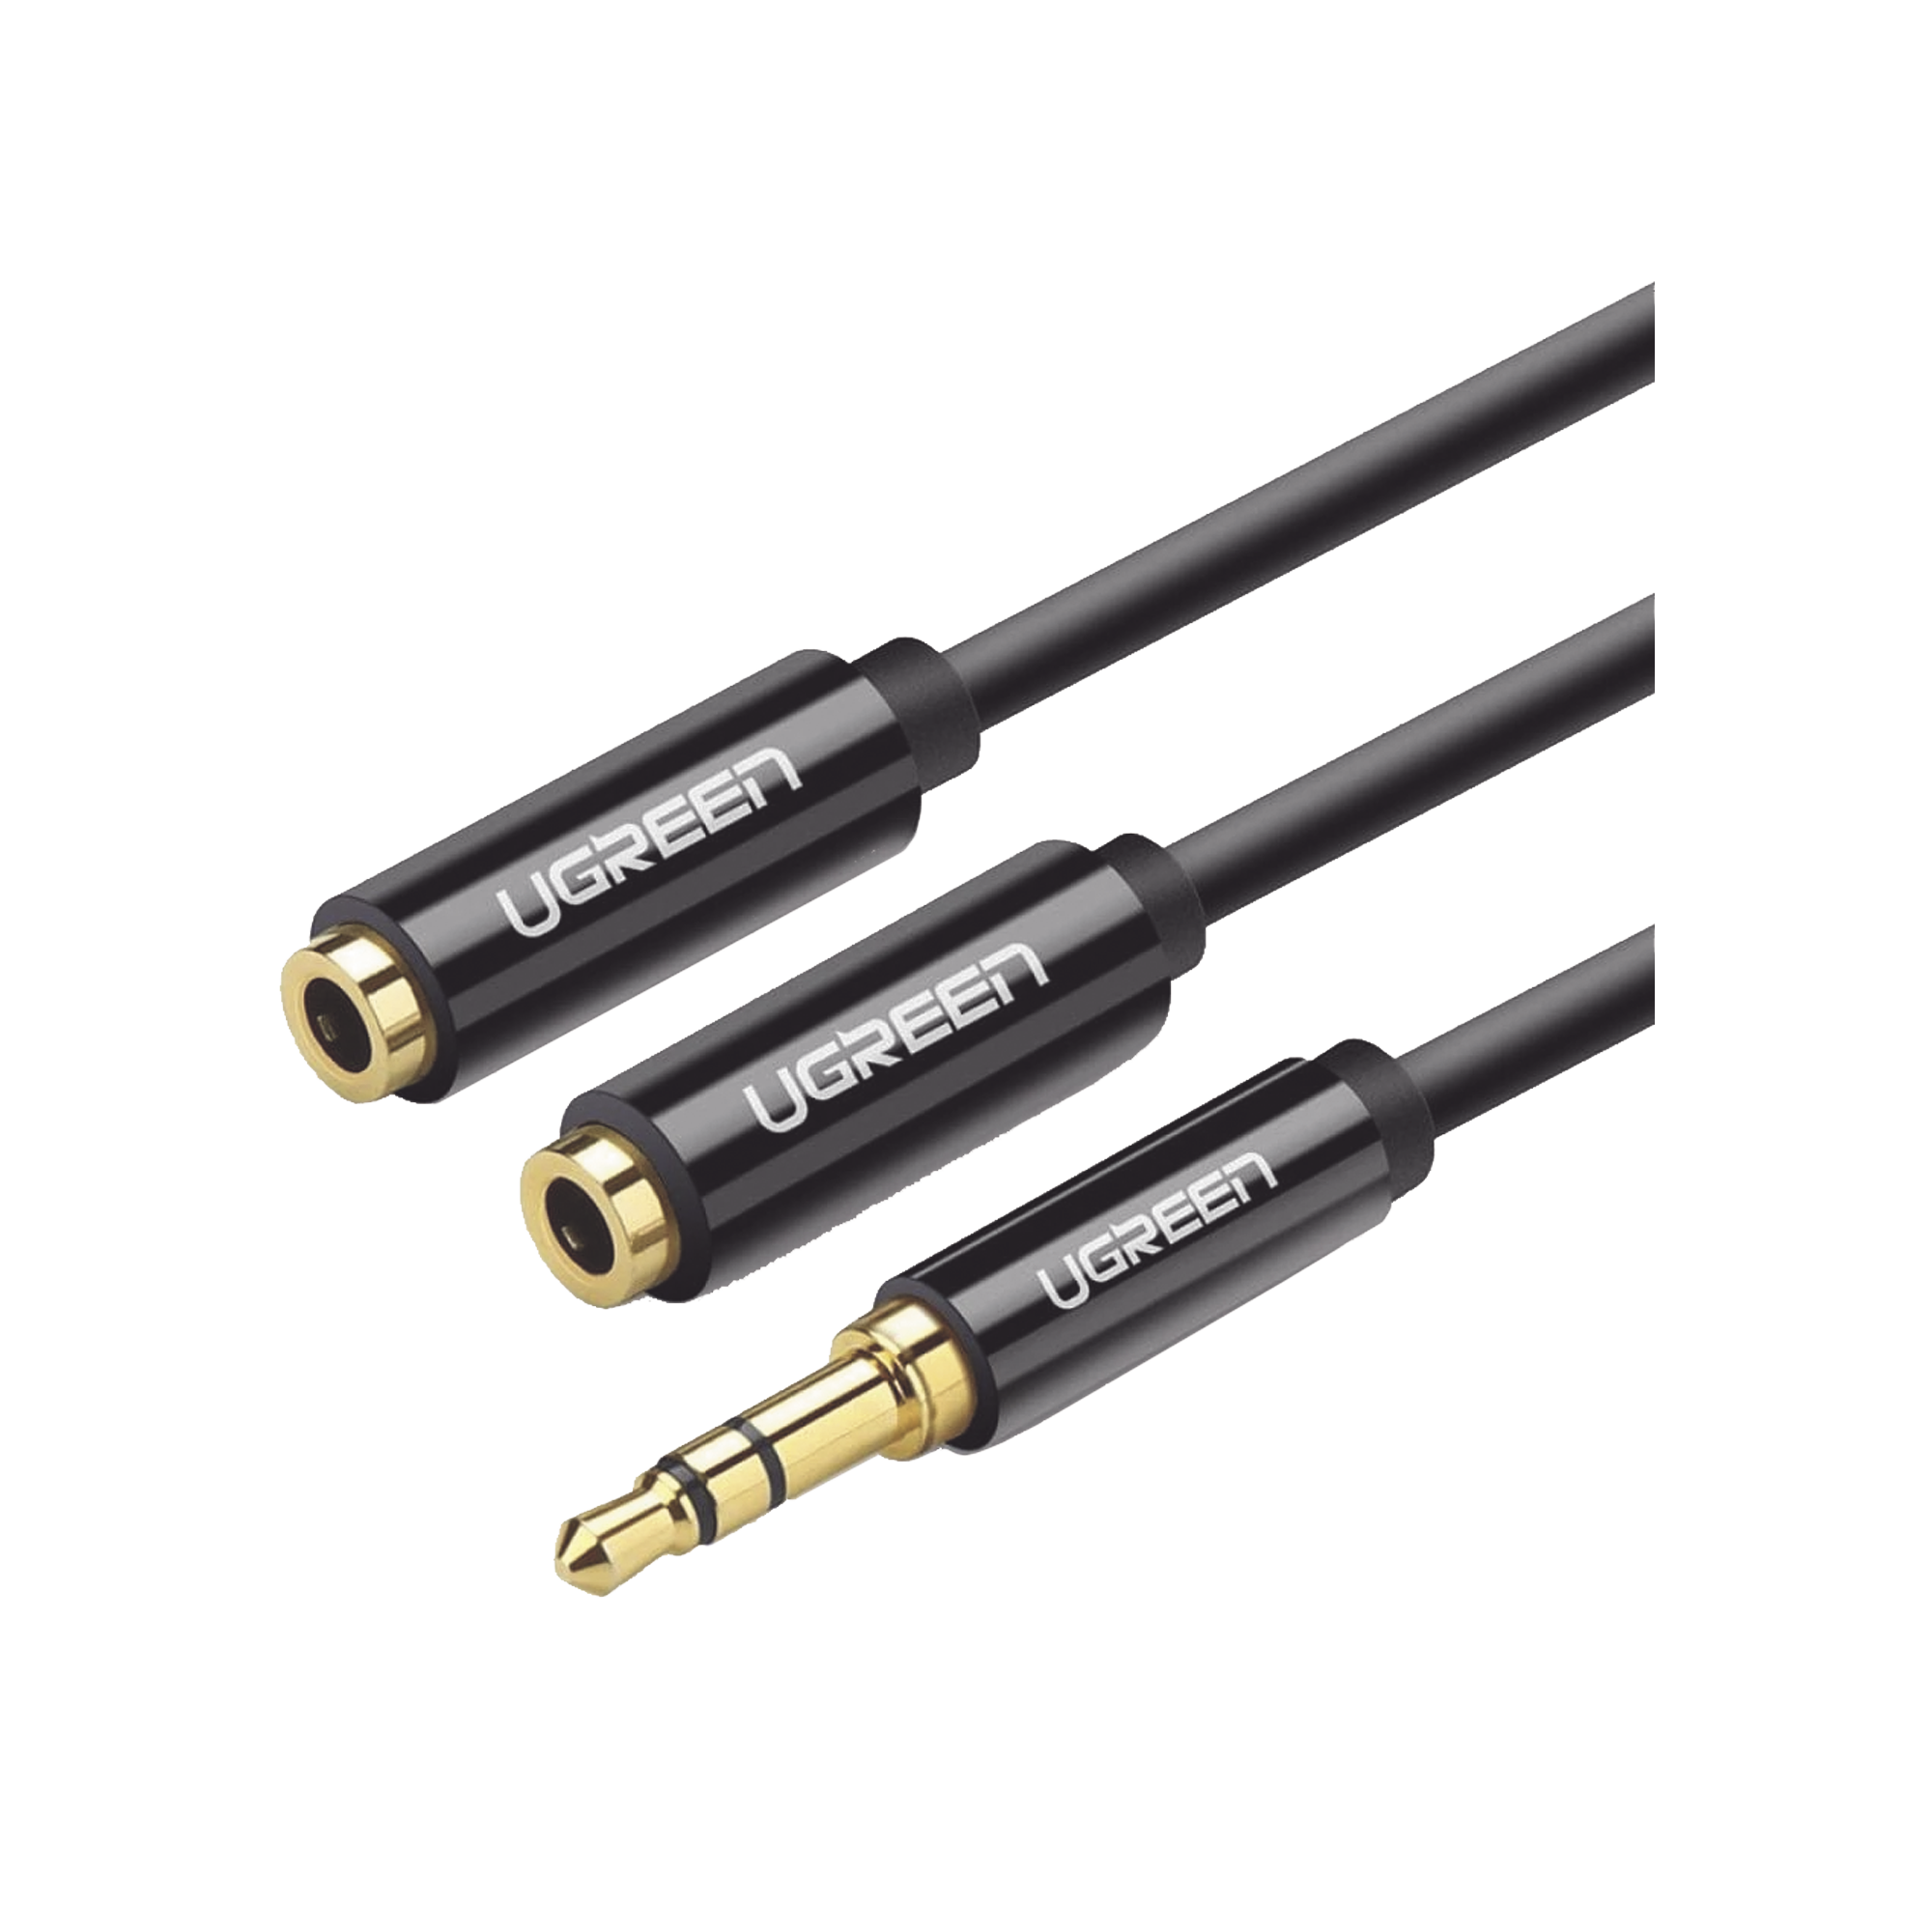 Cable Adaptador De Audio Micro-usb A 3,5 Mm Hembra, Negro